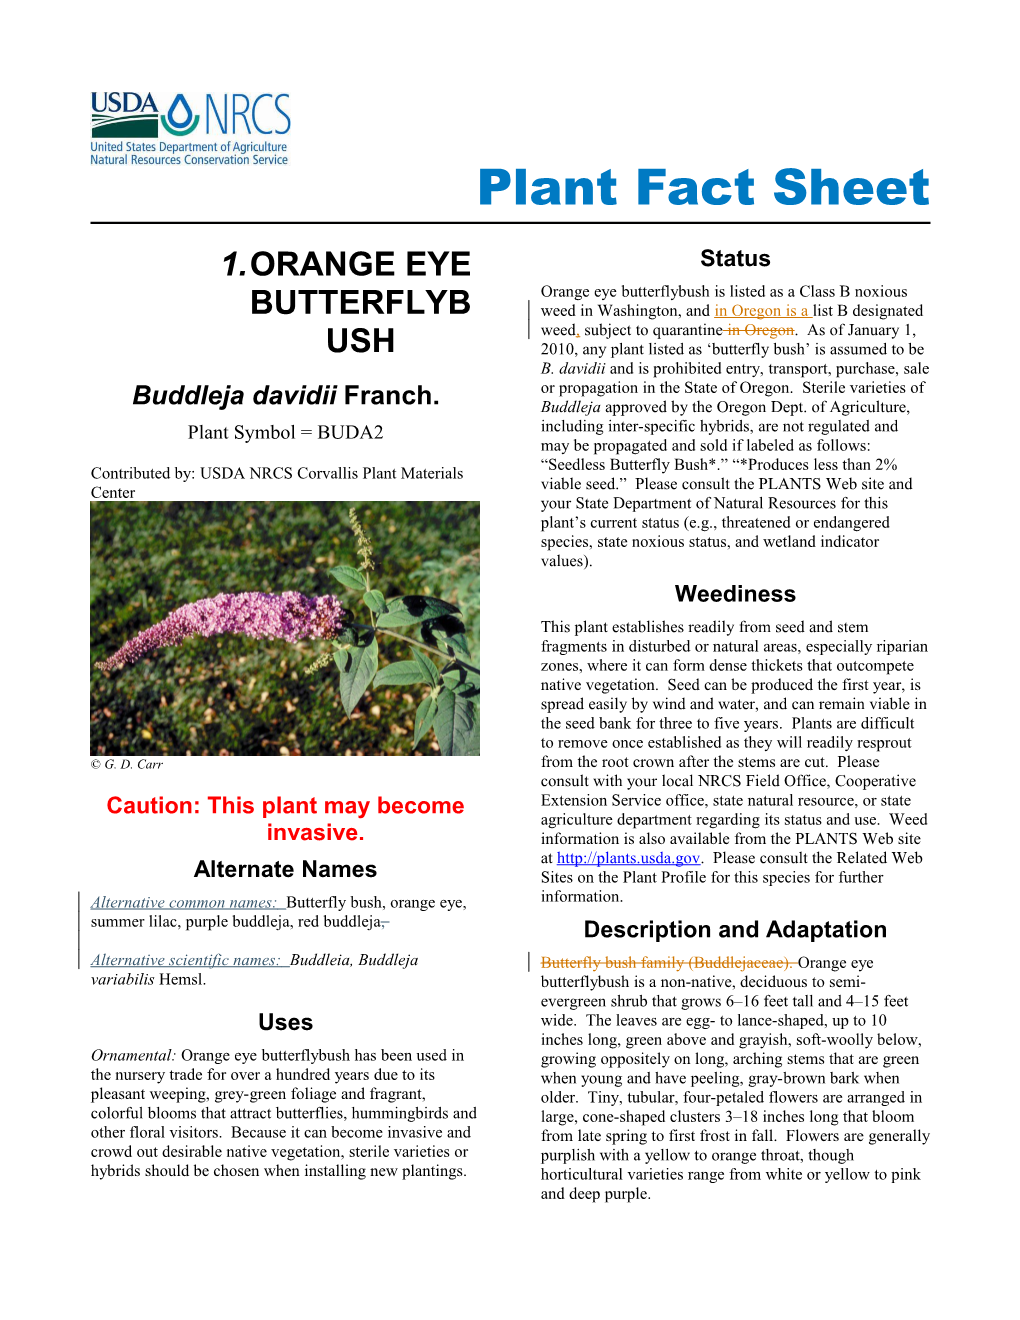 Orange Eye Butterflybush (Buddleja Davidii) Plant Fact Sheet